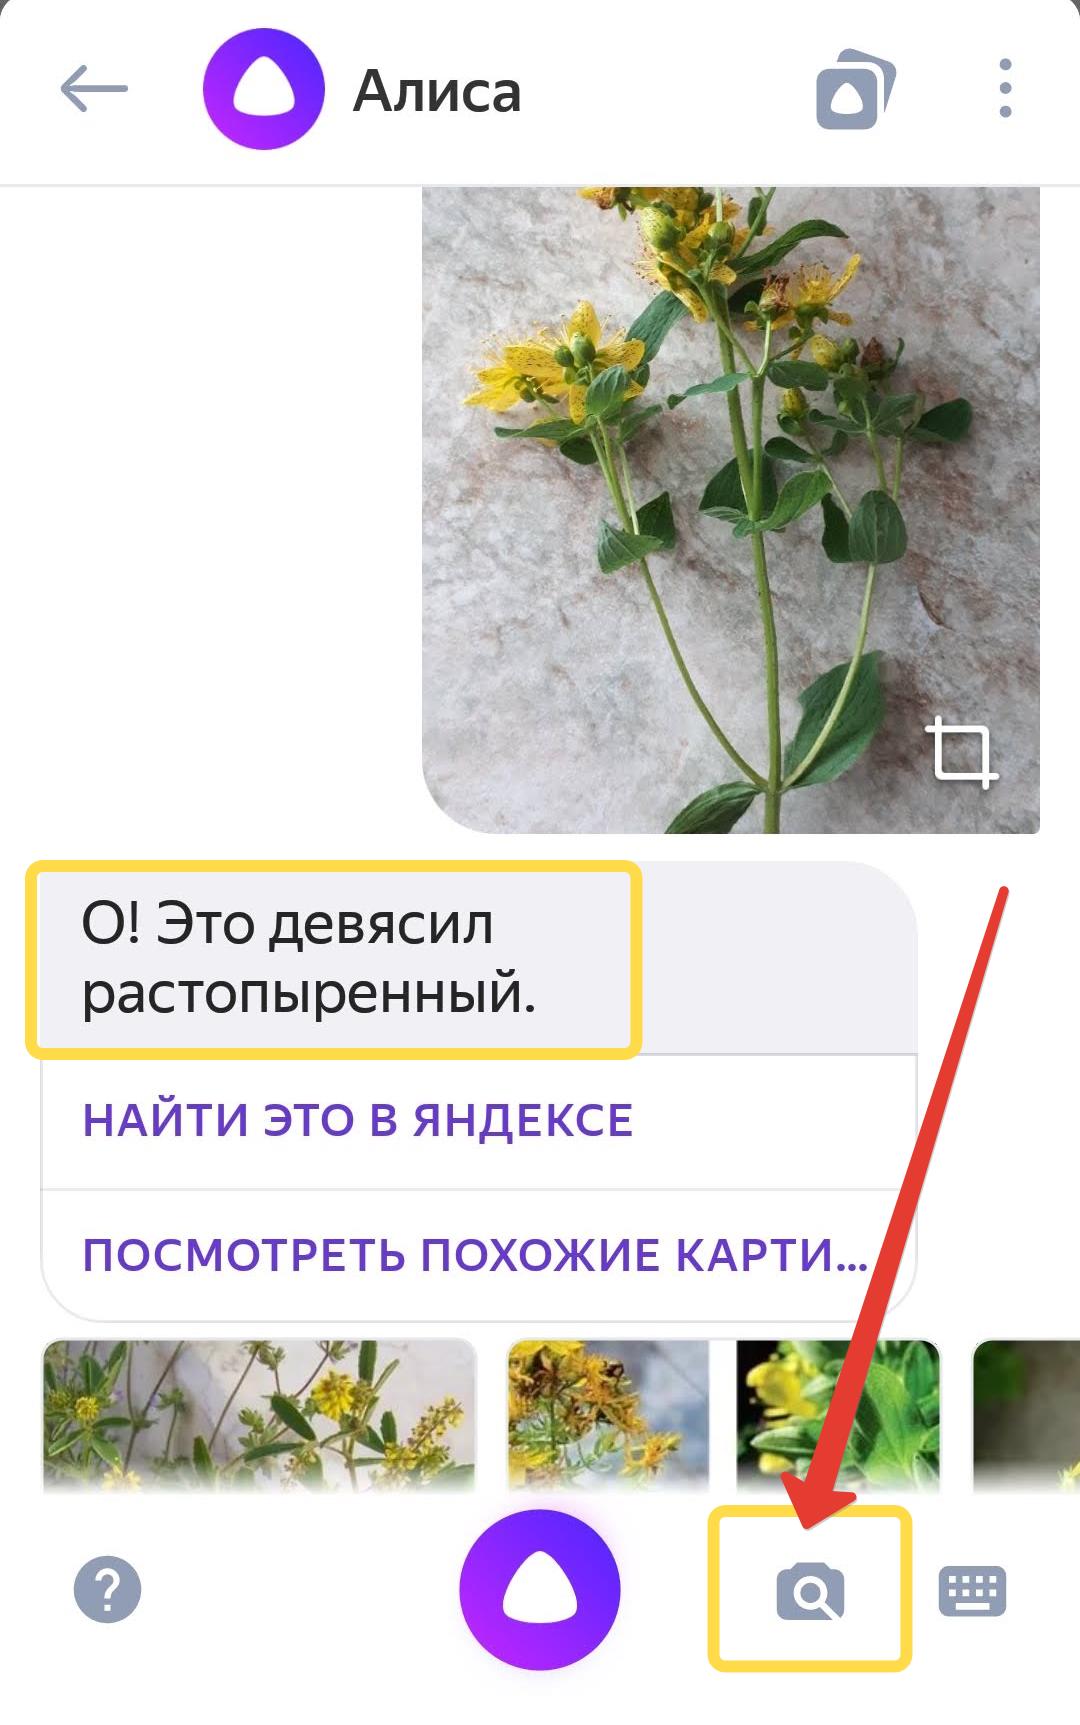 Как узнать растение по фото в Яндексе